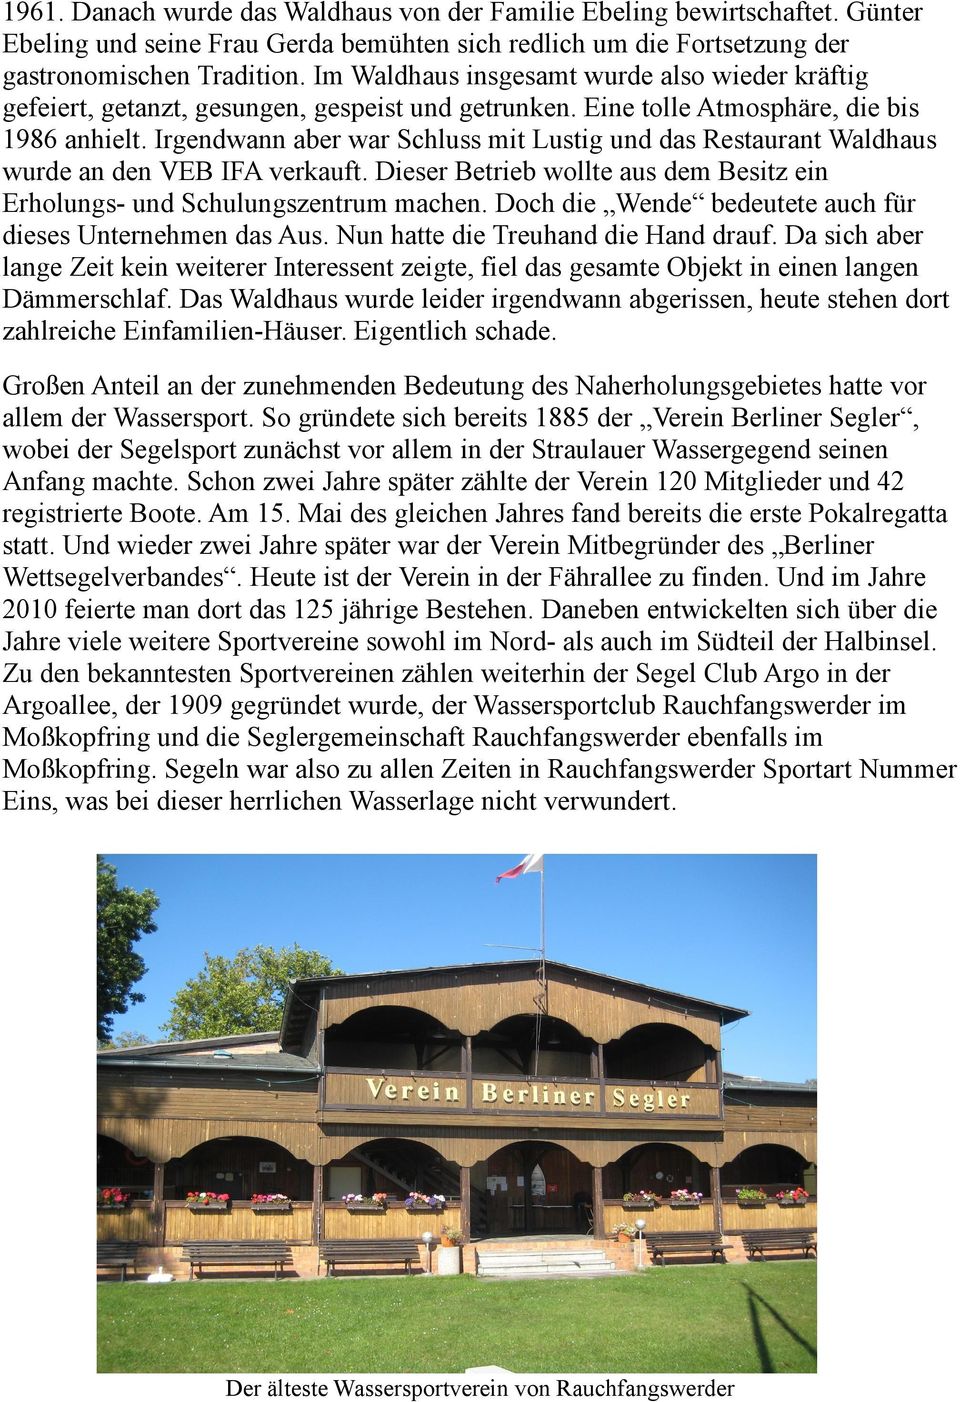 Irgendwann aber war Schluss mit Lustig und das Restaurant Waldhaus wurde an den VEB IFA verkauft. Dieser Betrieb wollte aus dem Besitz ein Erholungs- und Schulungszentrum machen.